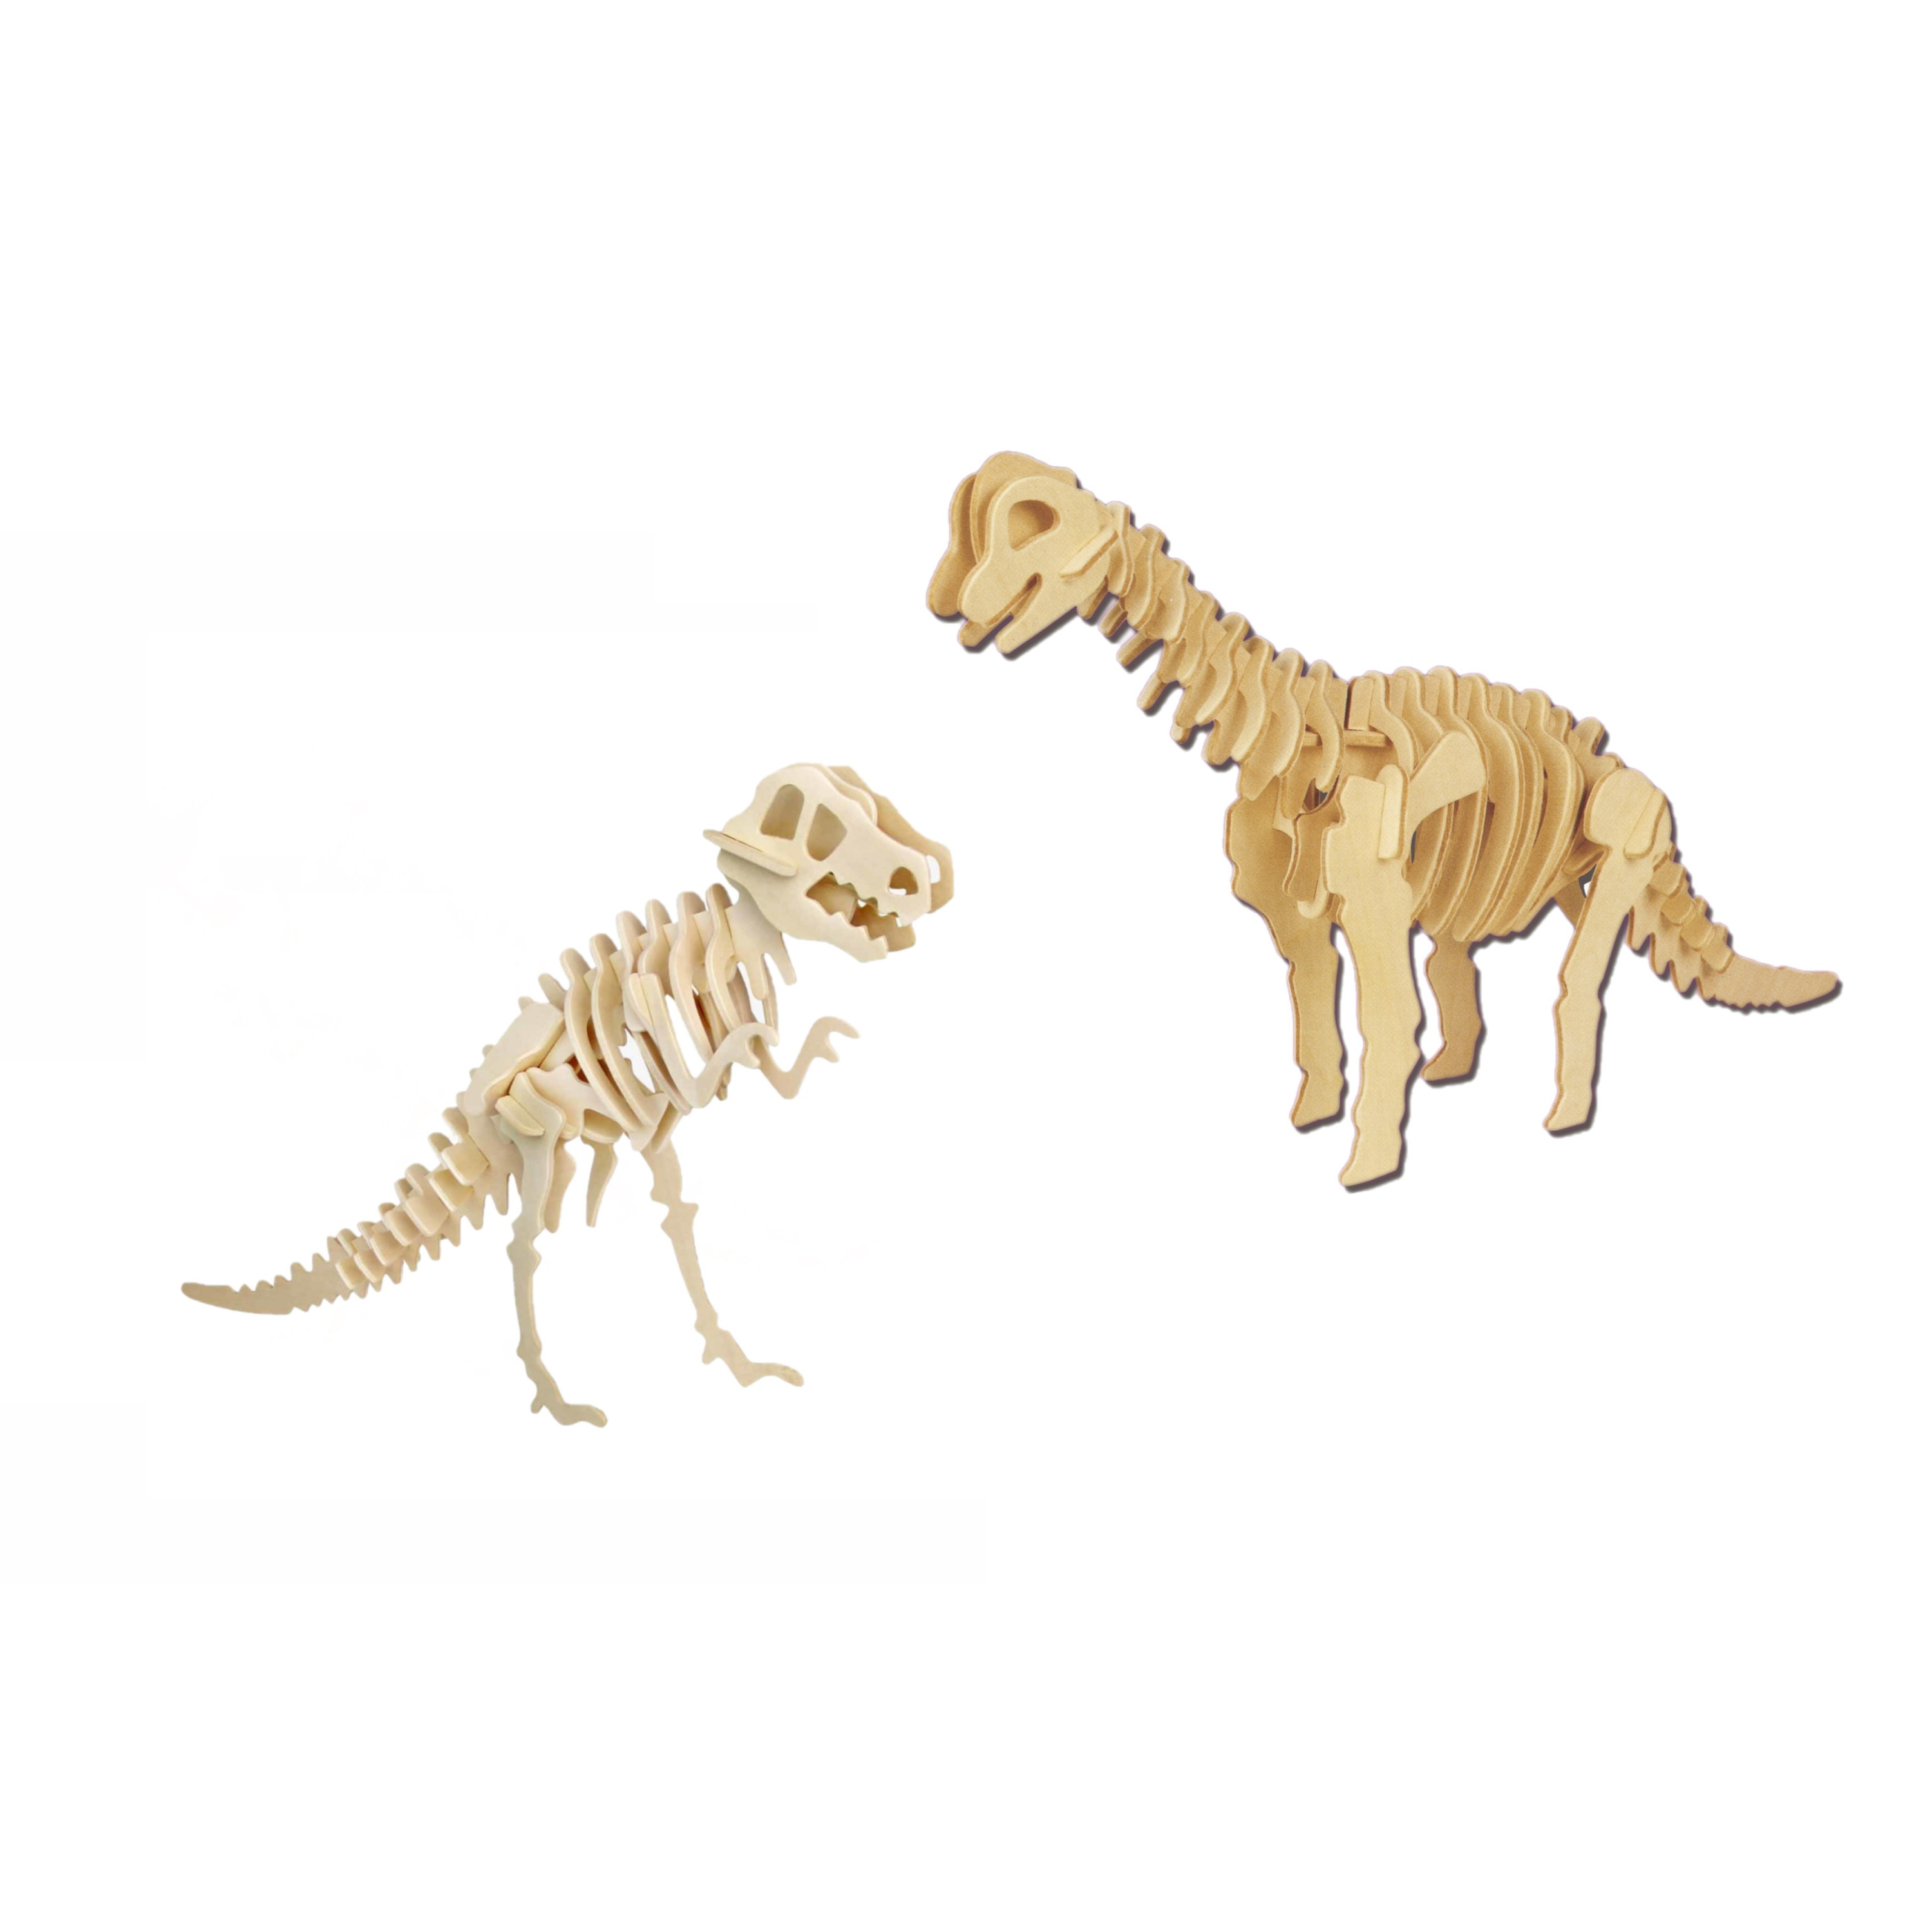 Houten 3D dino puzzel bouwpakket set T-rex en Brachiosaurus